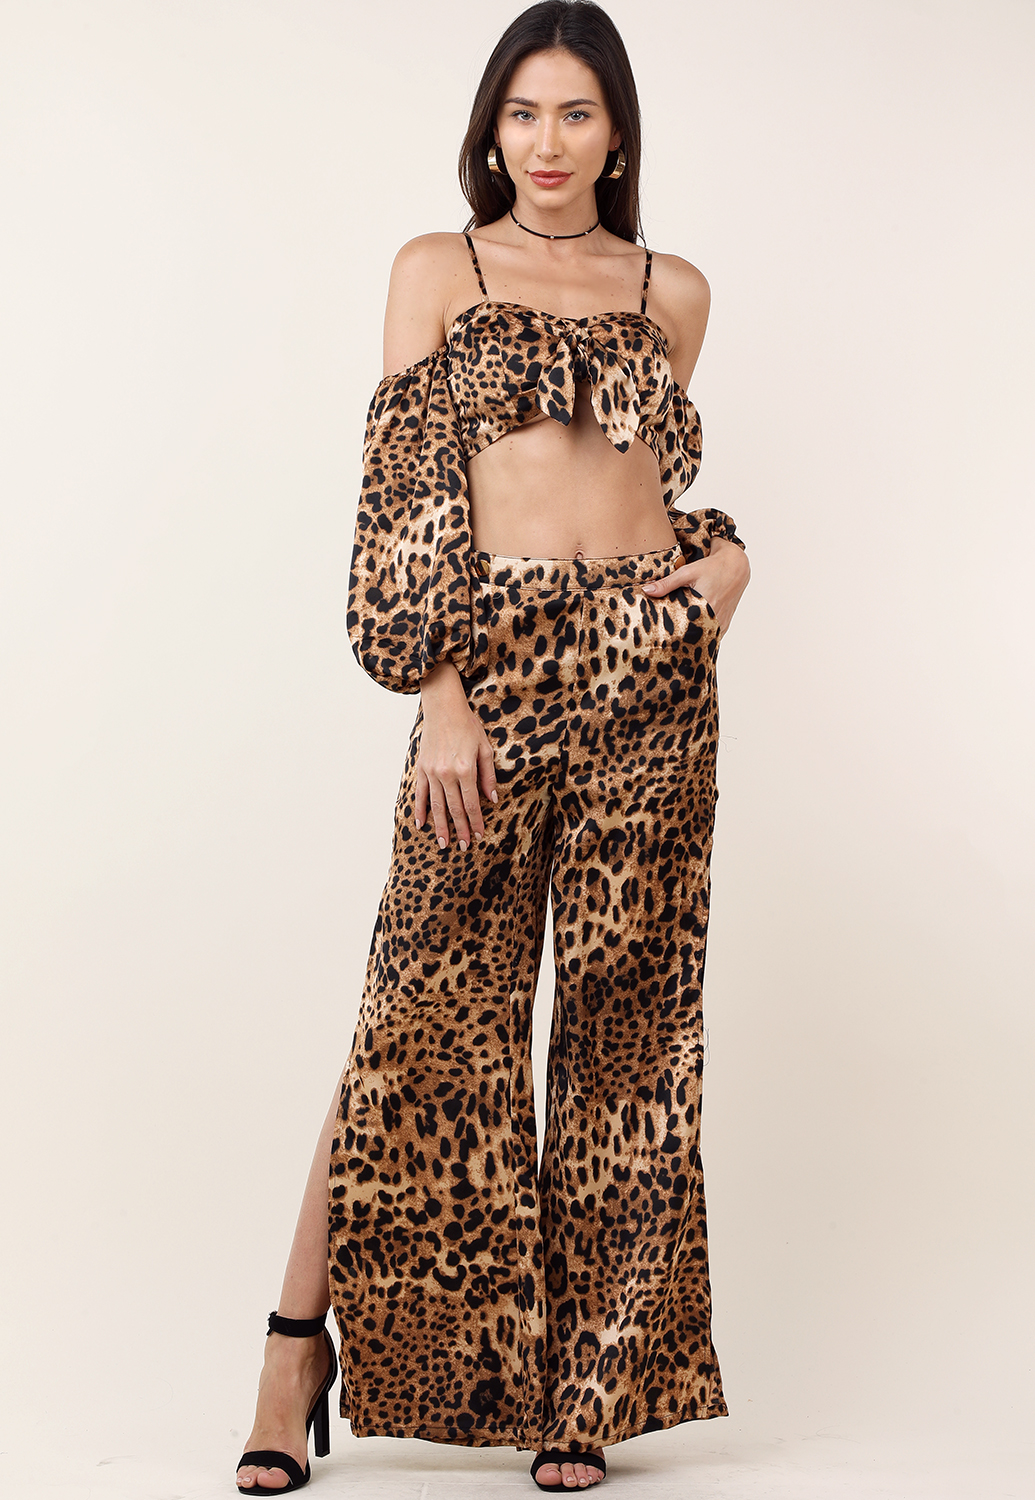 Cheetah Print Cropped Top W/Pants Set 